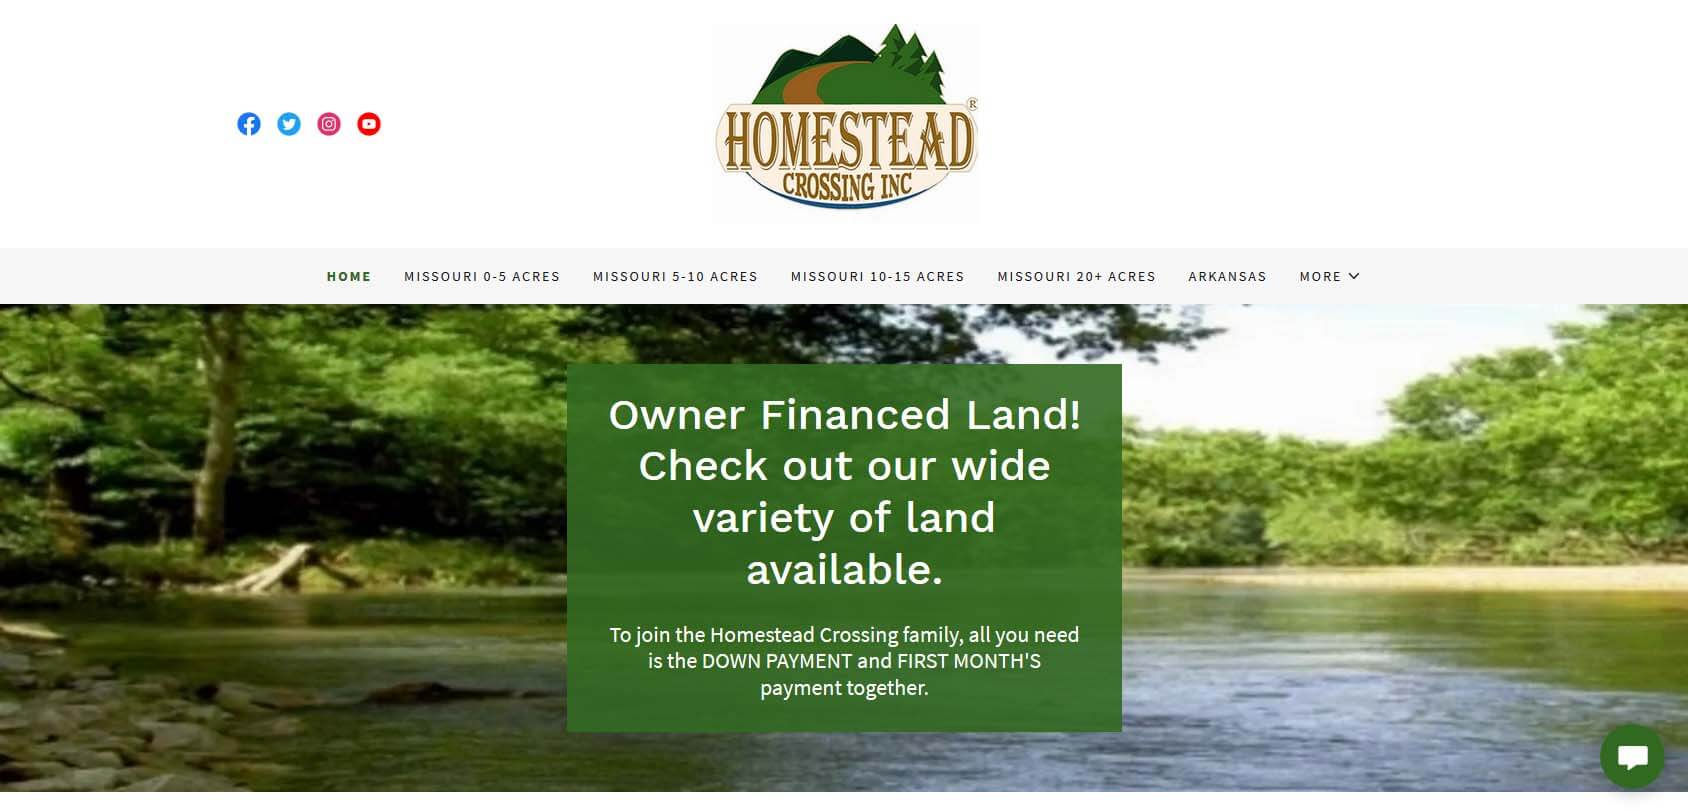 Homestead Crossing Inc Homepage